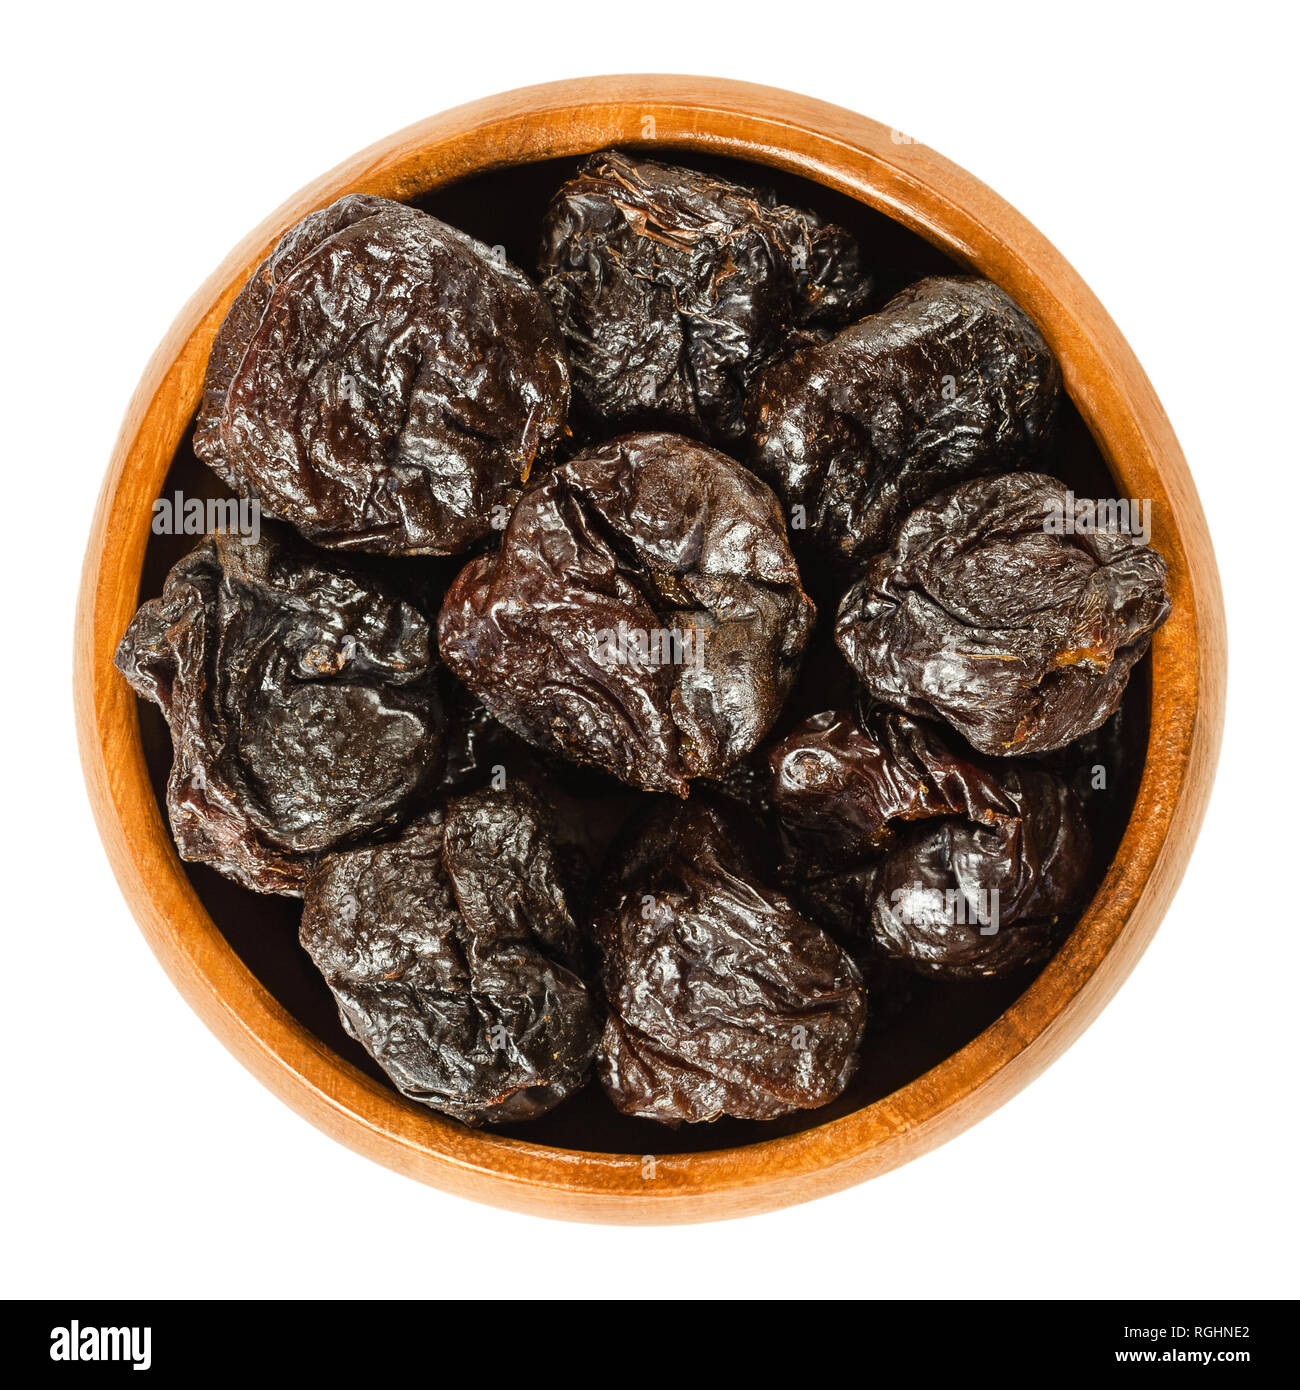 Pflaumen, getrocknet Pflaumen in Houten. Ungekocht, entwässert, narbige Früchte von Prunus domestica mit schwarzer Farbe, als Snack verwendet. Isolierte Makro Foto. Stockfoto